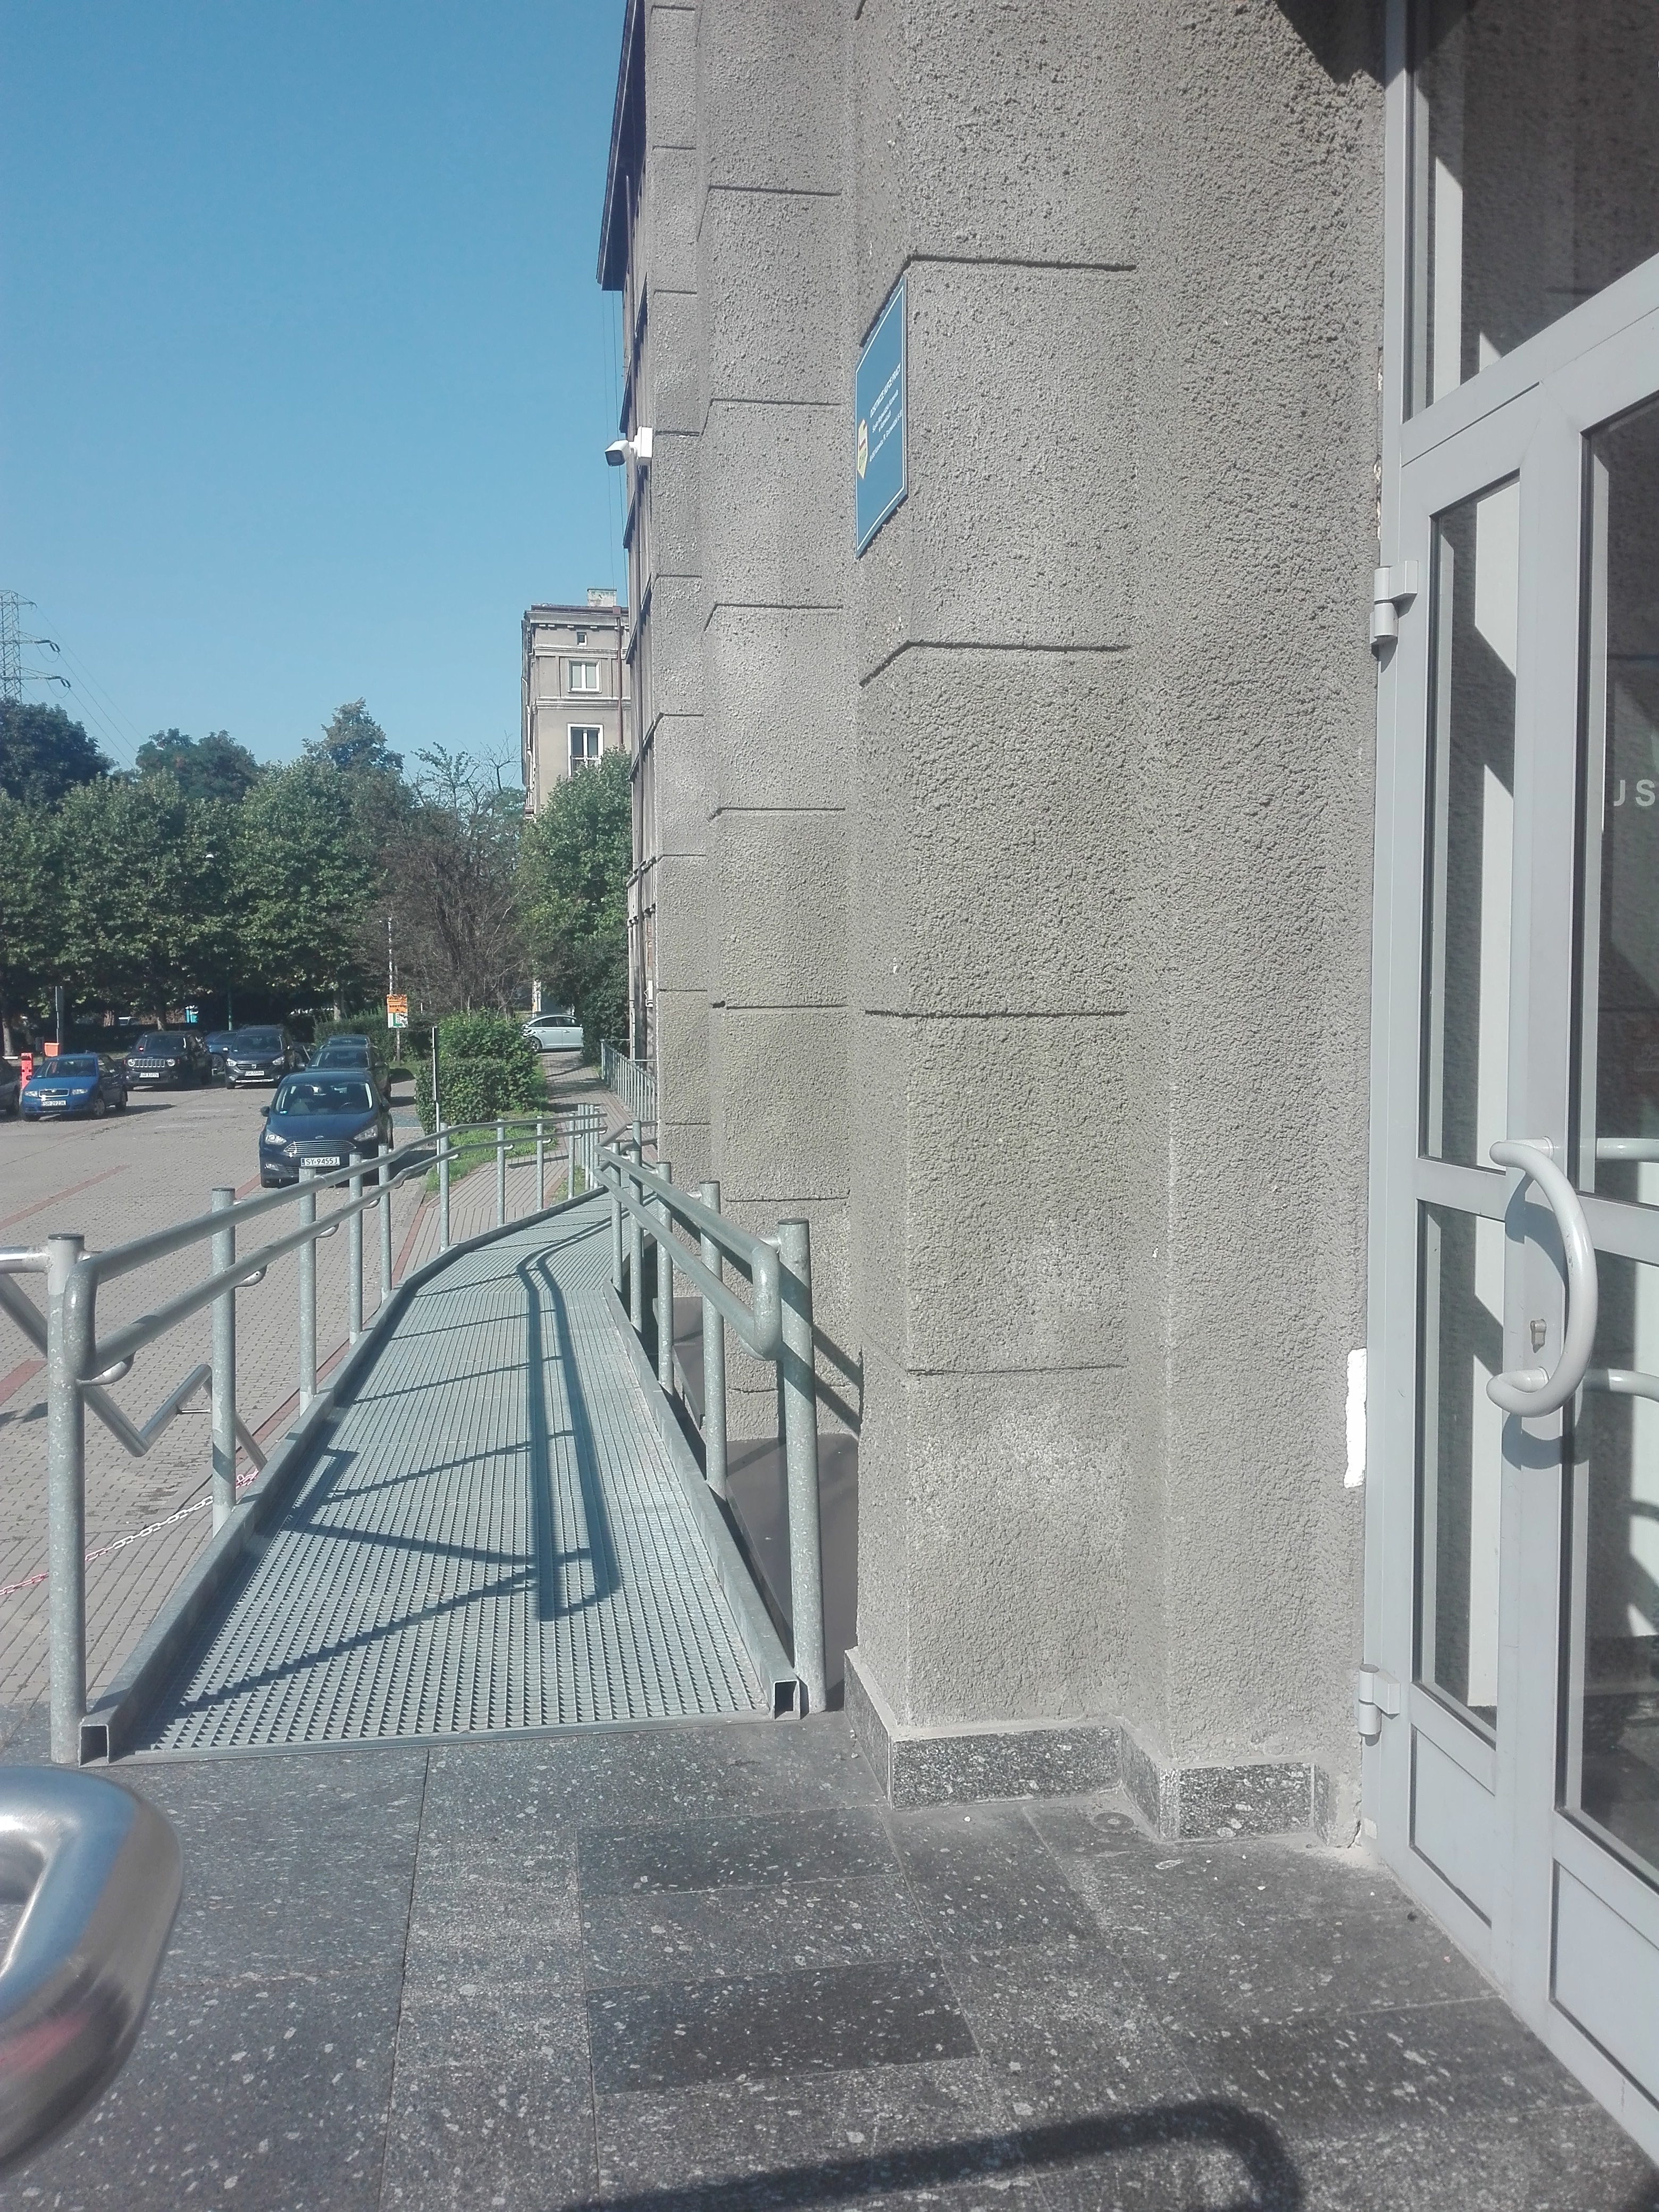 Widok z wejścia do budynku na pochylnię dla wózków i jej przebieg wzdłuż budynku z 2 zakrętami. W tle widać parking z zaparkowanymi samochodami. 